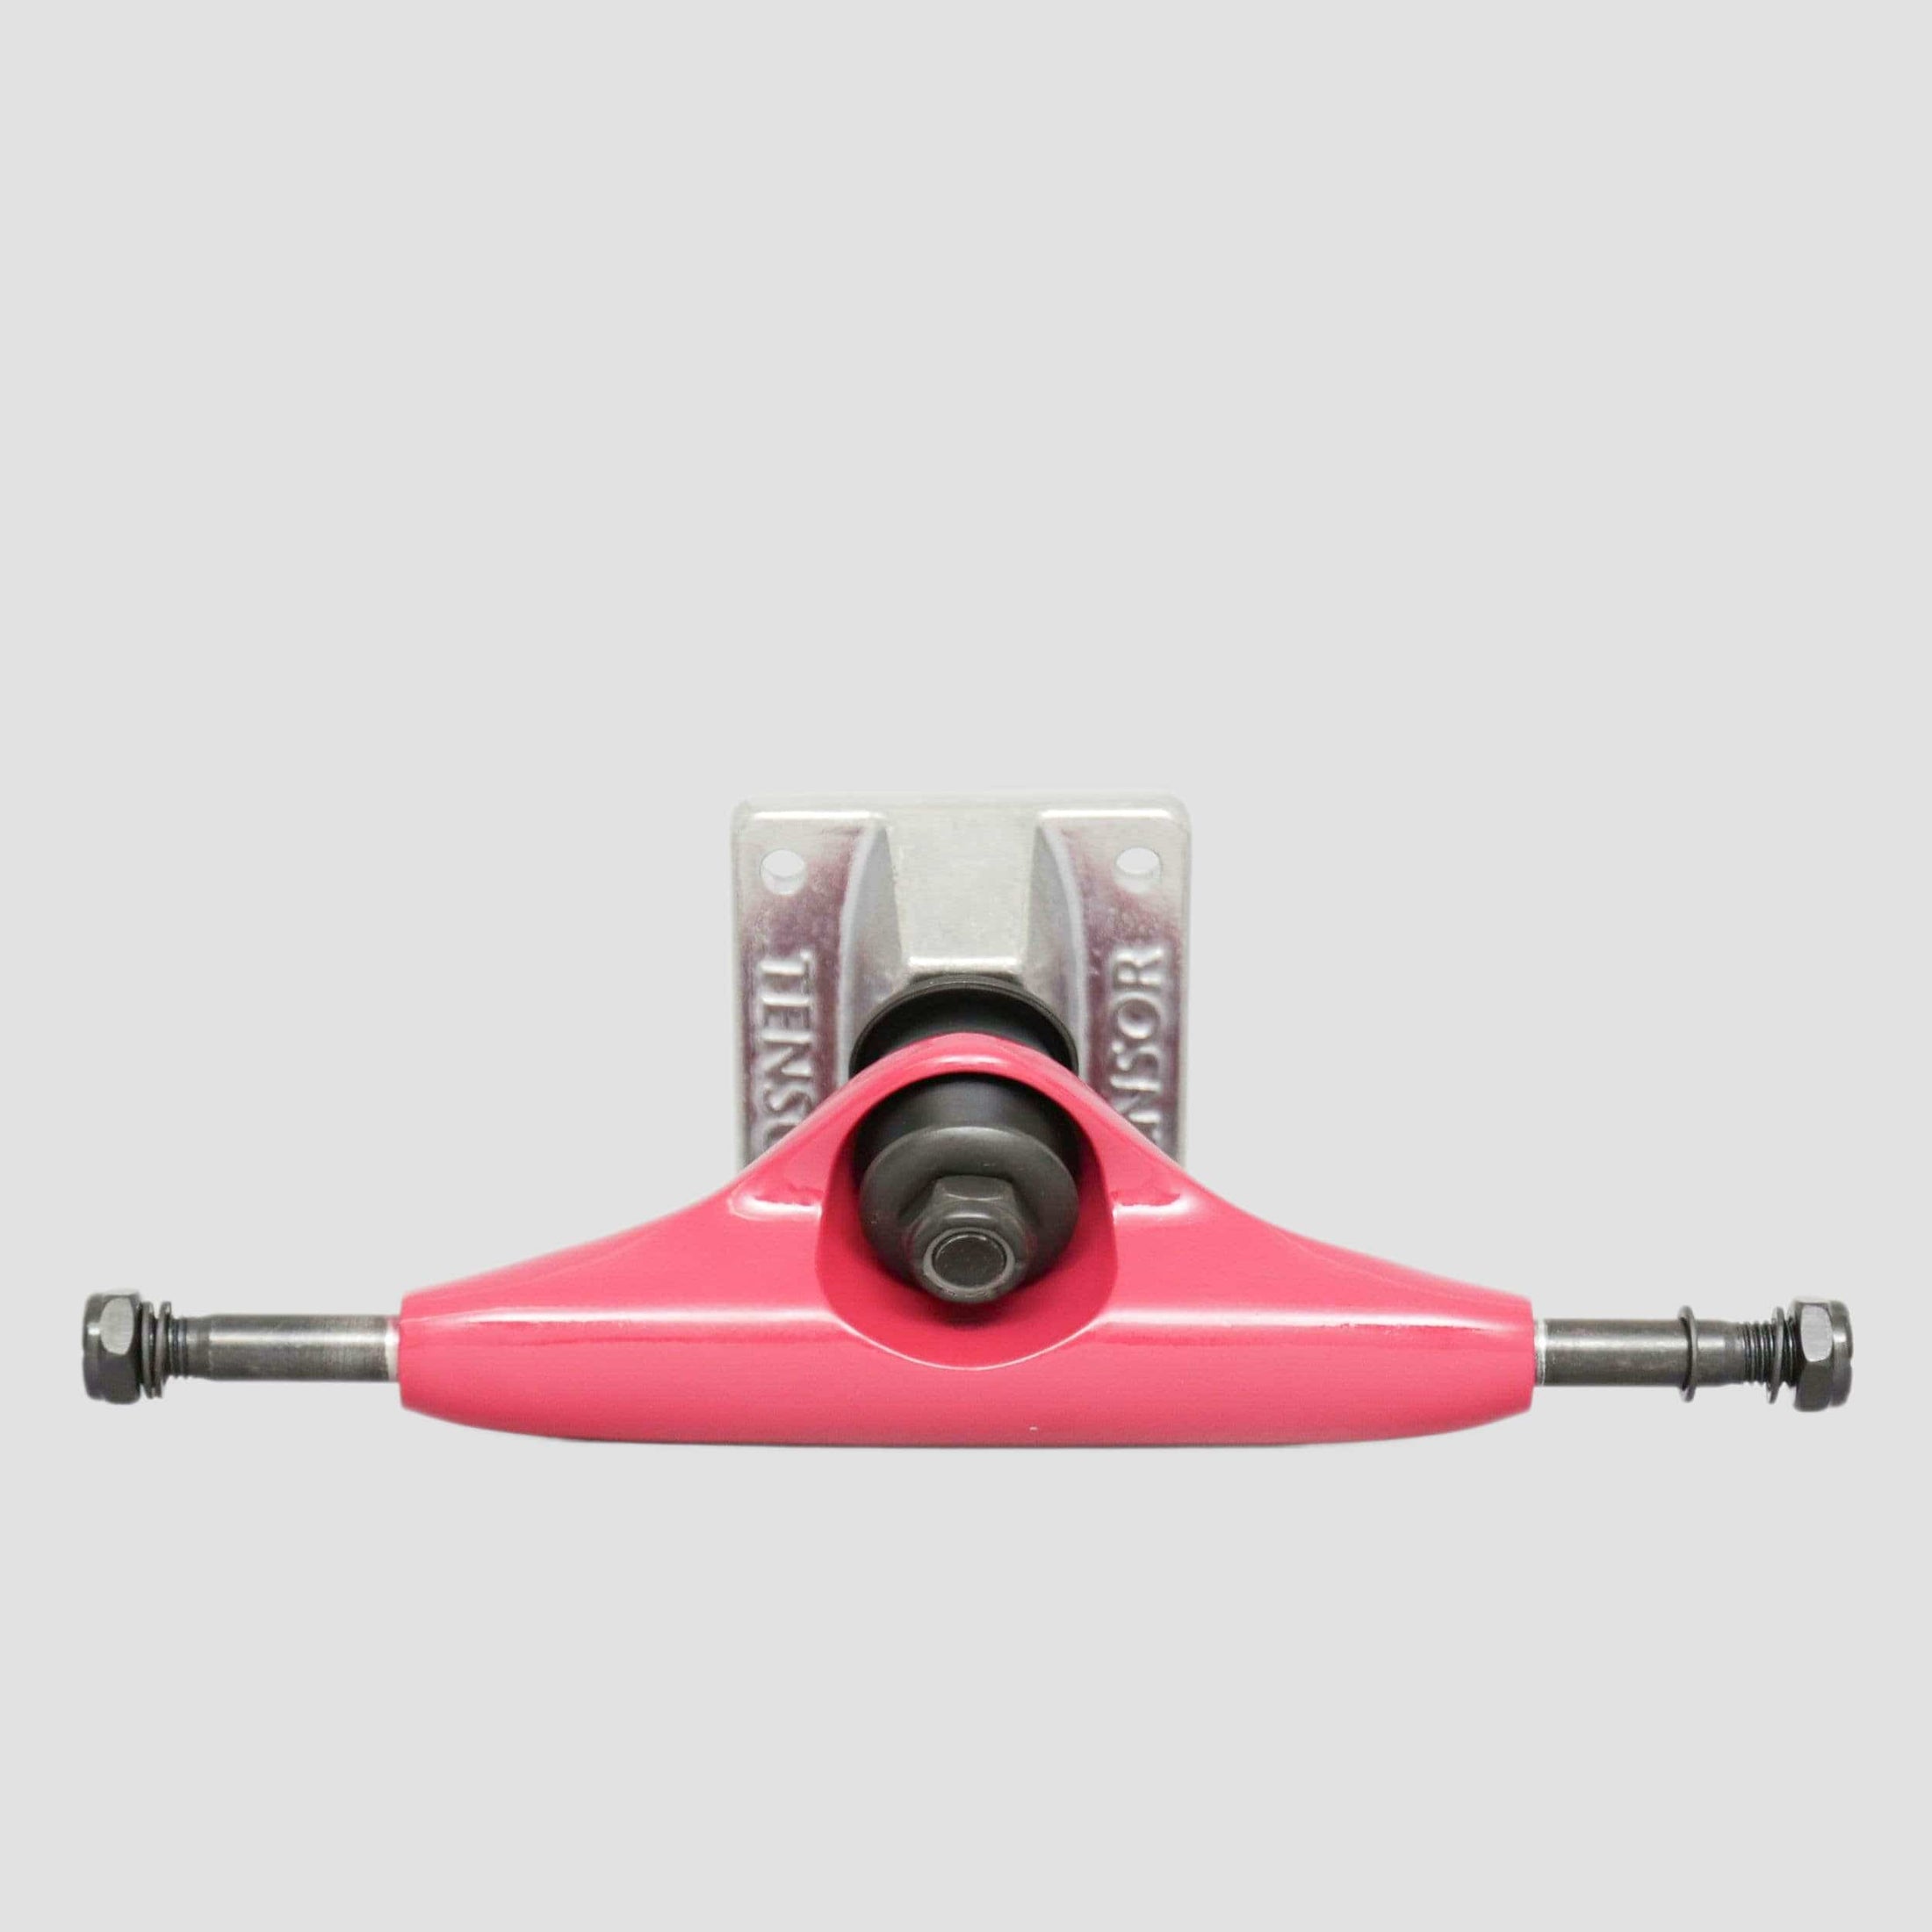 Tensor 5.0 Alloy Skateboard Trucks Crimson / Raw (Pair)